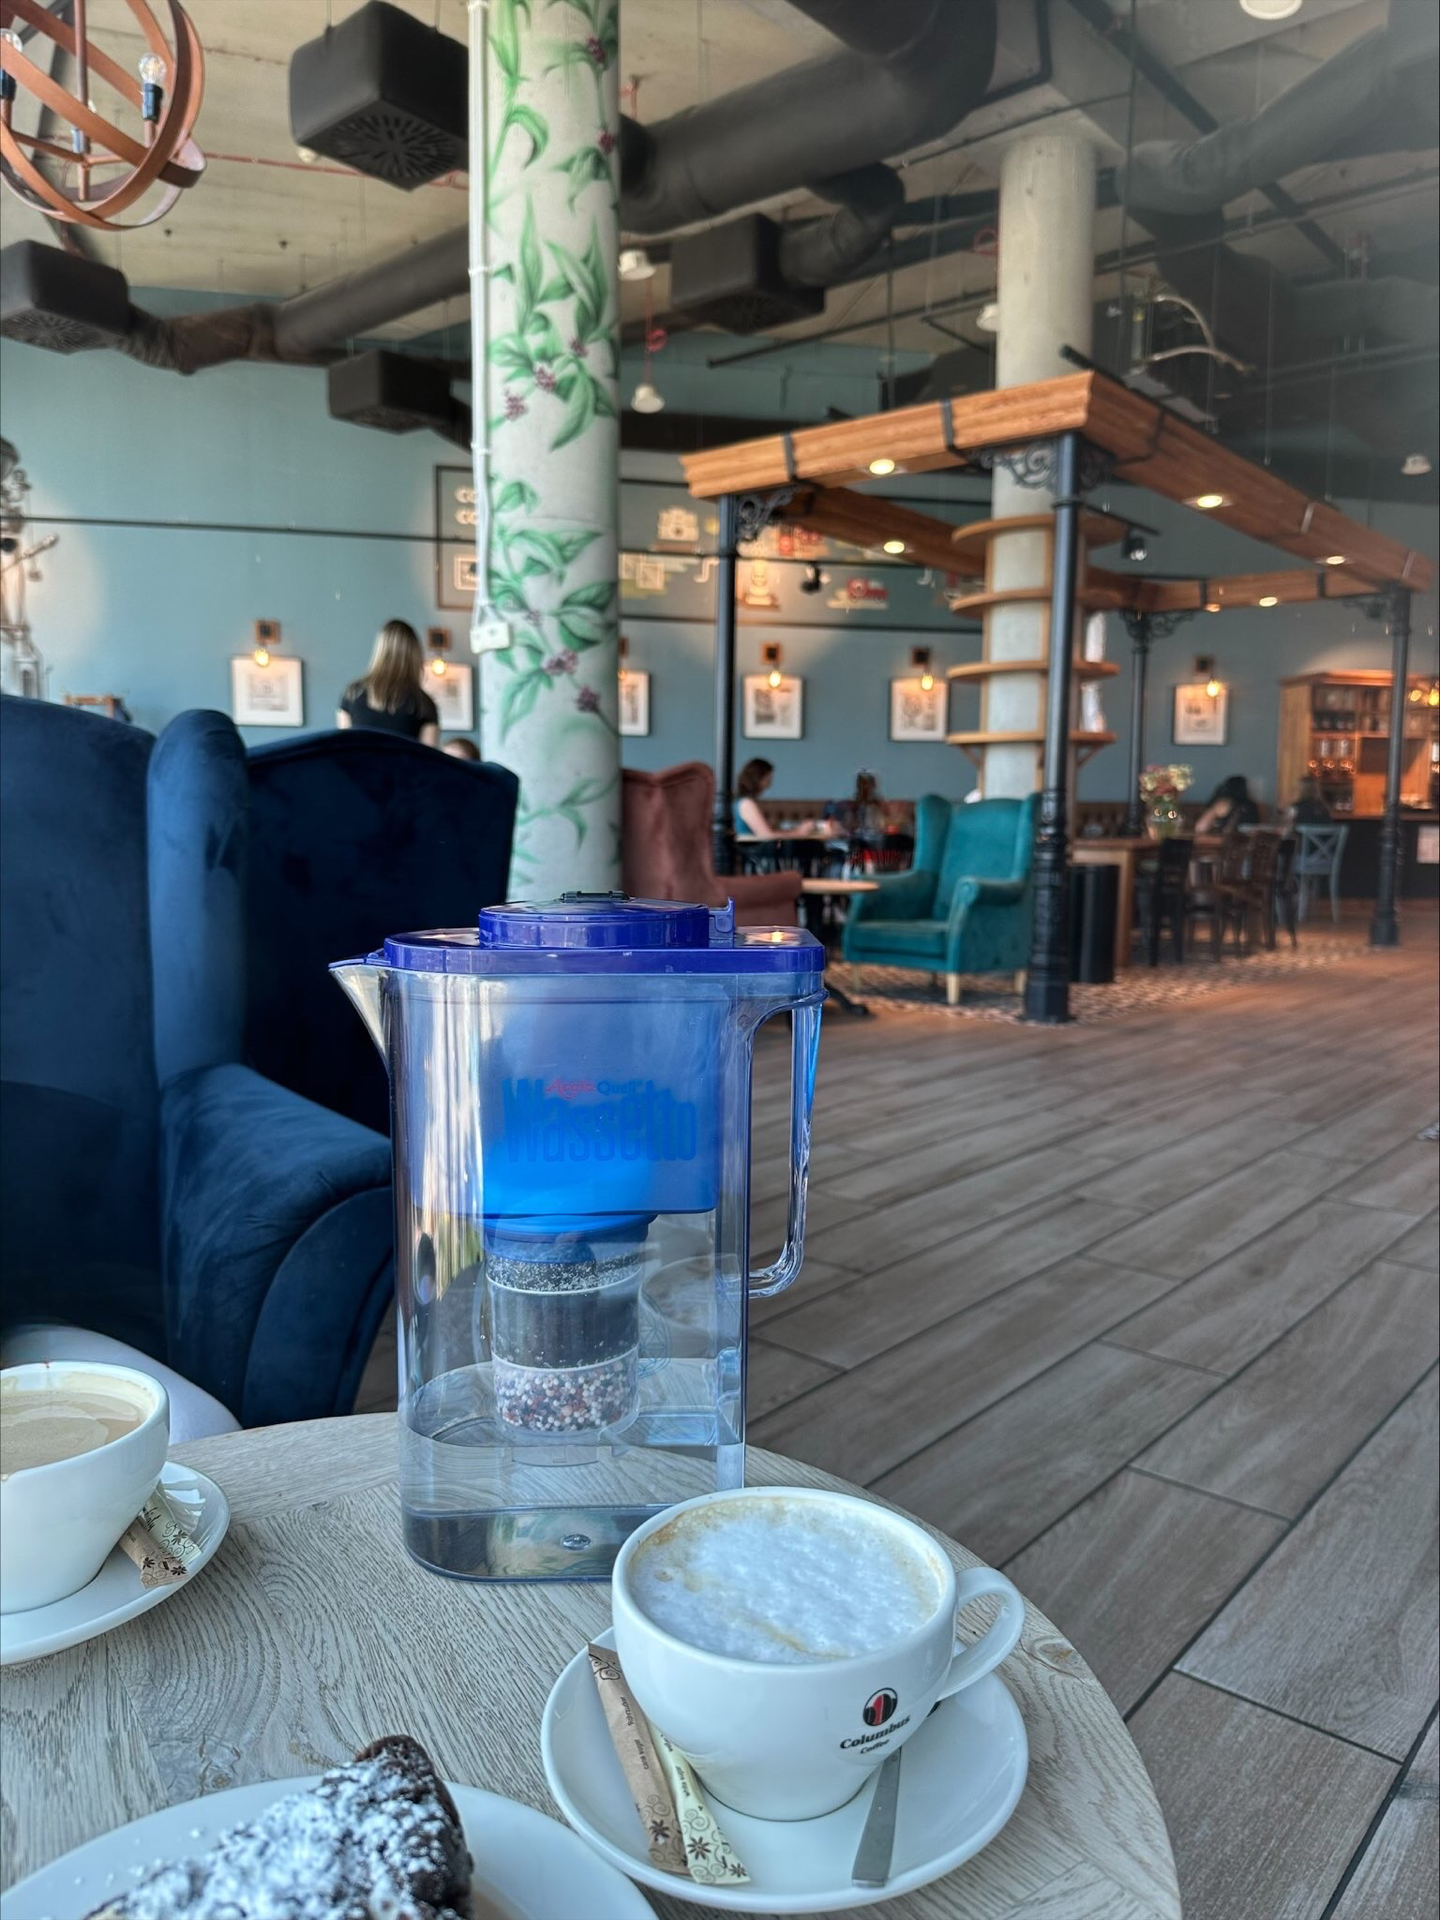 Wassetto Kannen Wasserfilter, 2 Kaffee Tassen und ein Teller mit Kuchen auf einem kleinen Holztisch. Im Hintergrund sieht man ein Cafe im industriellen Stil. 